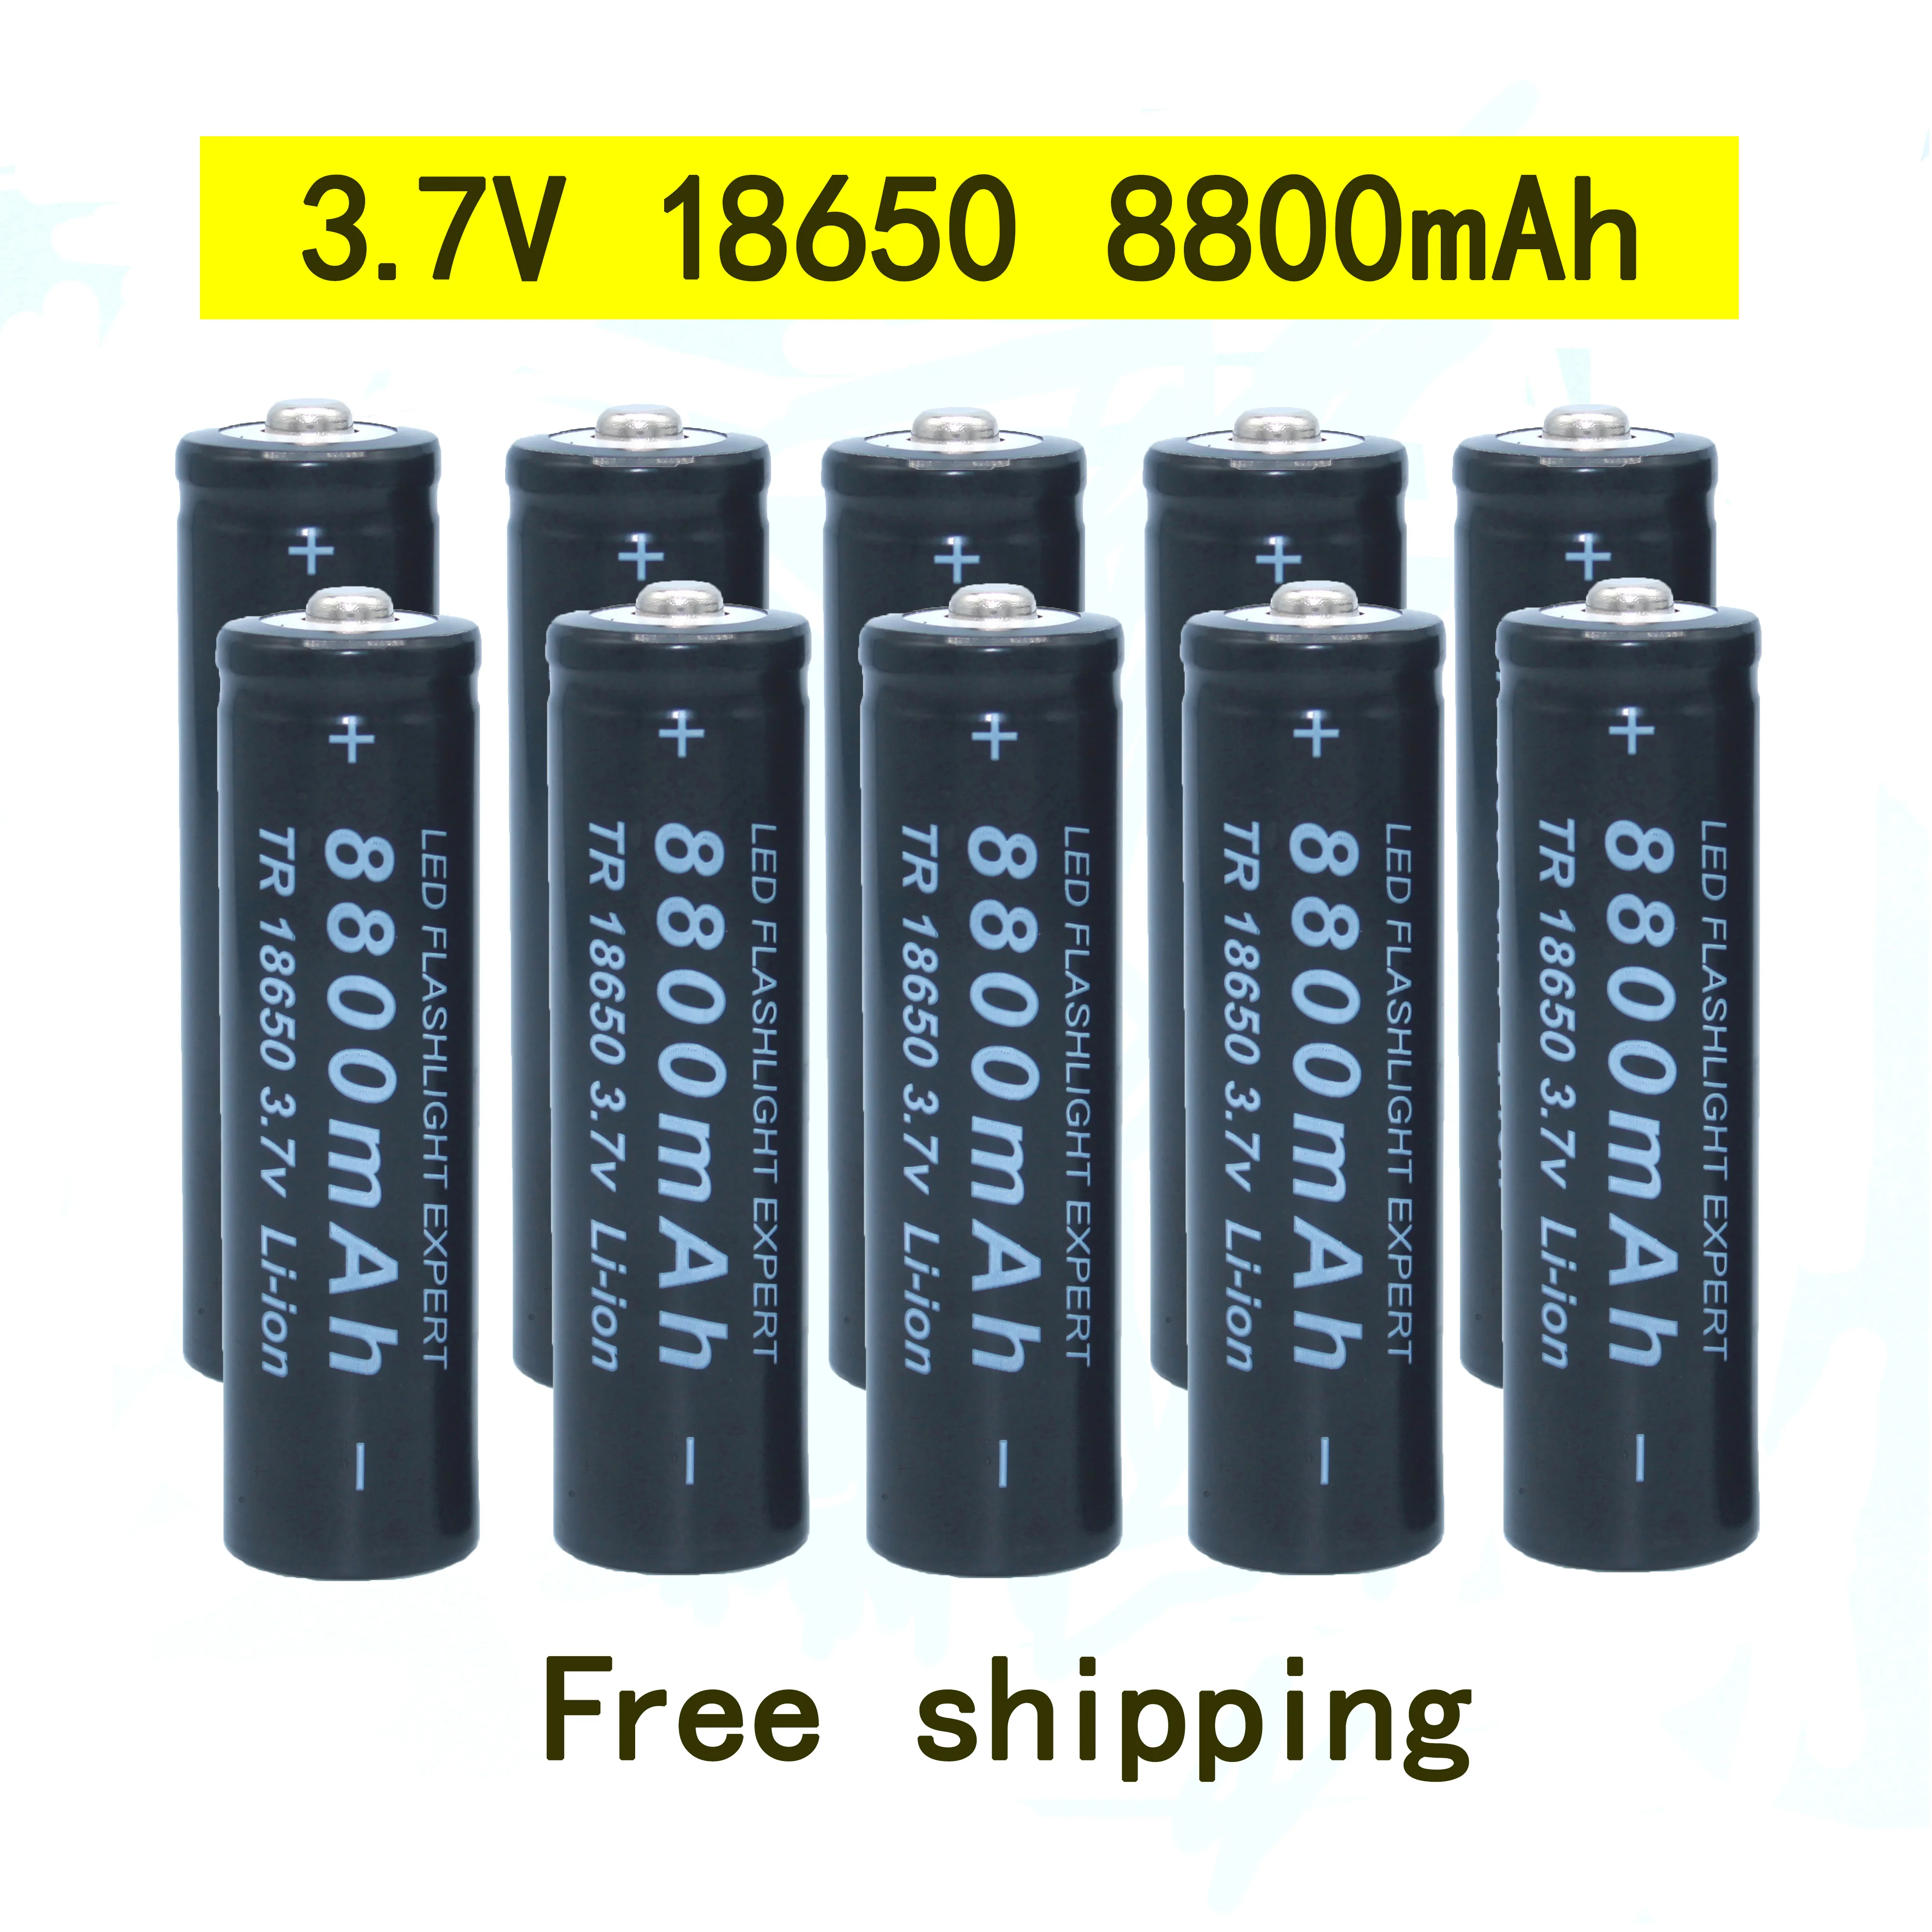 

18650.bateria de alta qualidade.8800 mah.3.7v.18650 baterias li-ion bateria recarregavel para lanterna tocha + frete gratis